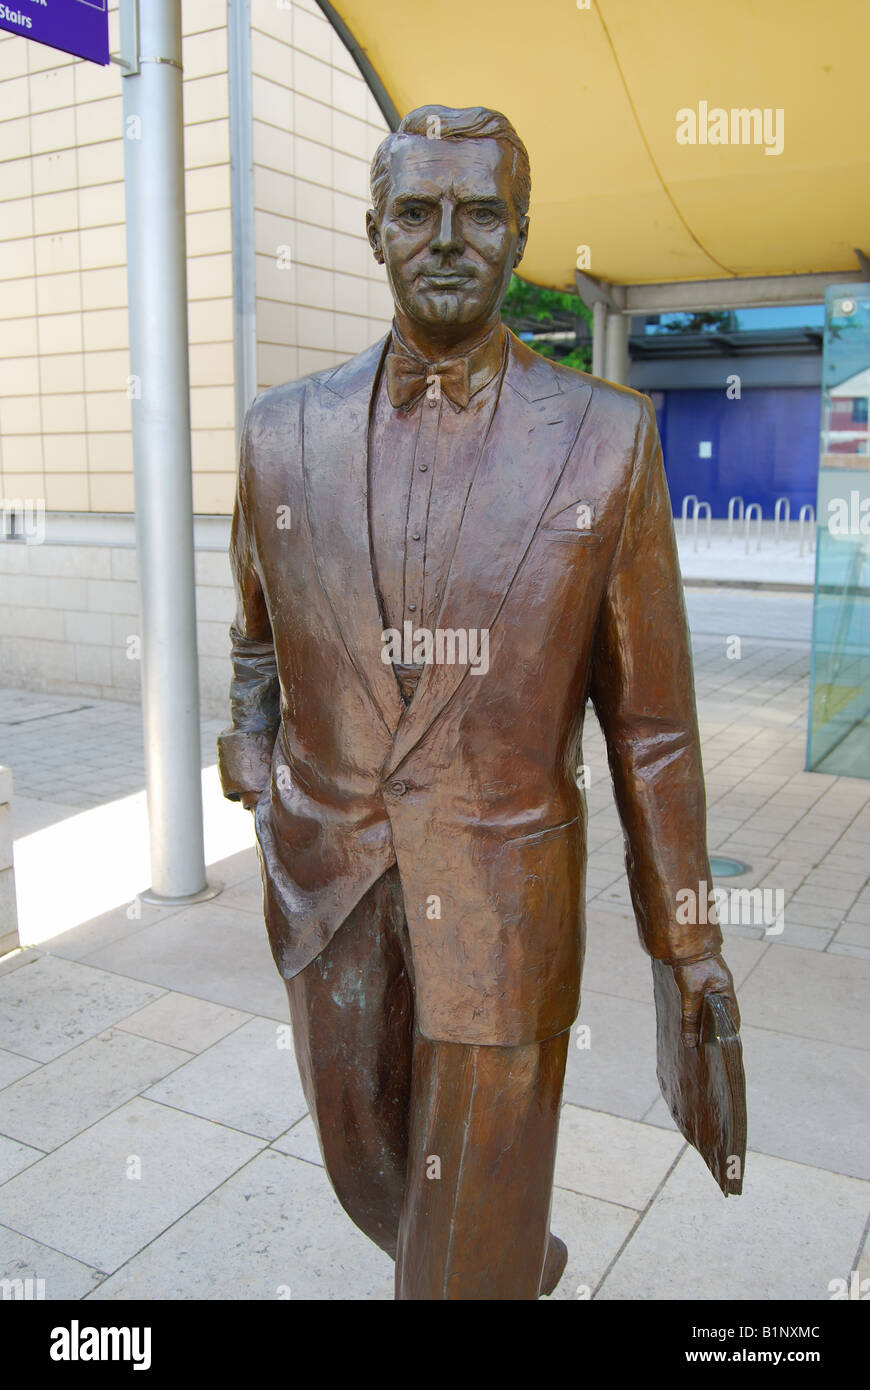 Une statue en bronze de la légende d'Hollywood, Cary Grant, la Place du Millénaire, d'Harbourside Bristol, Angleterre, Royaume-Uni Banque D'Images